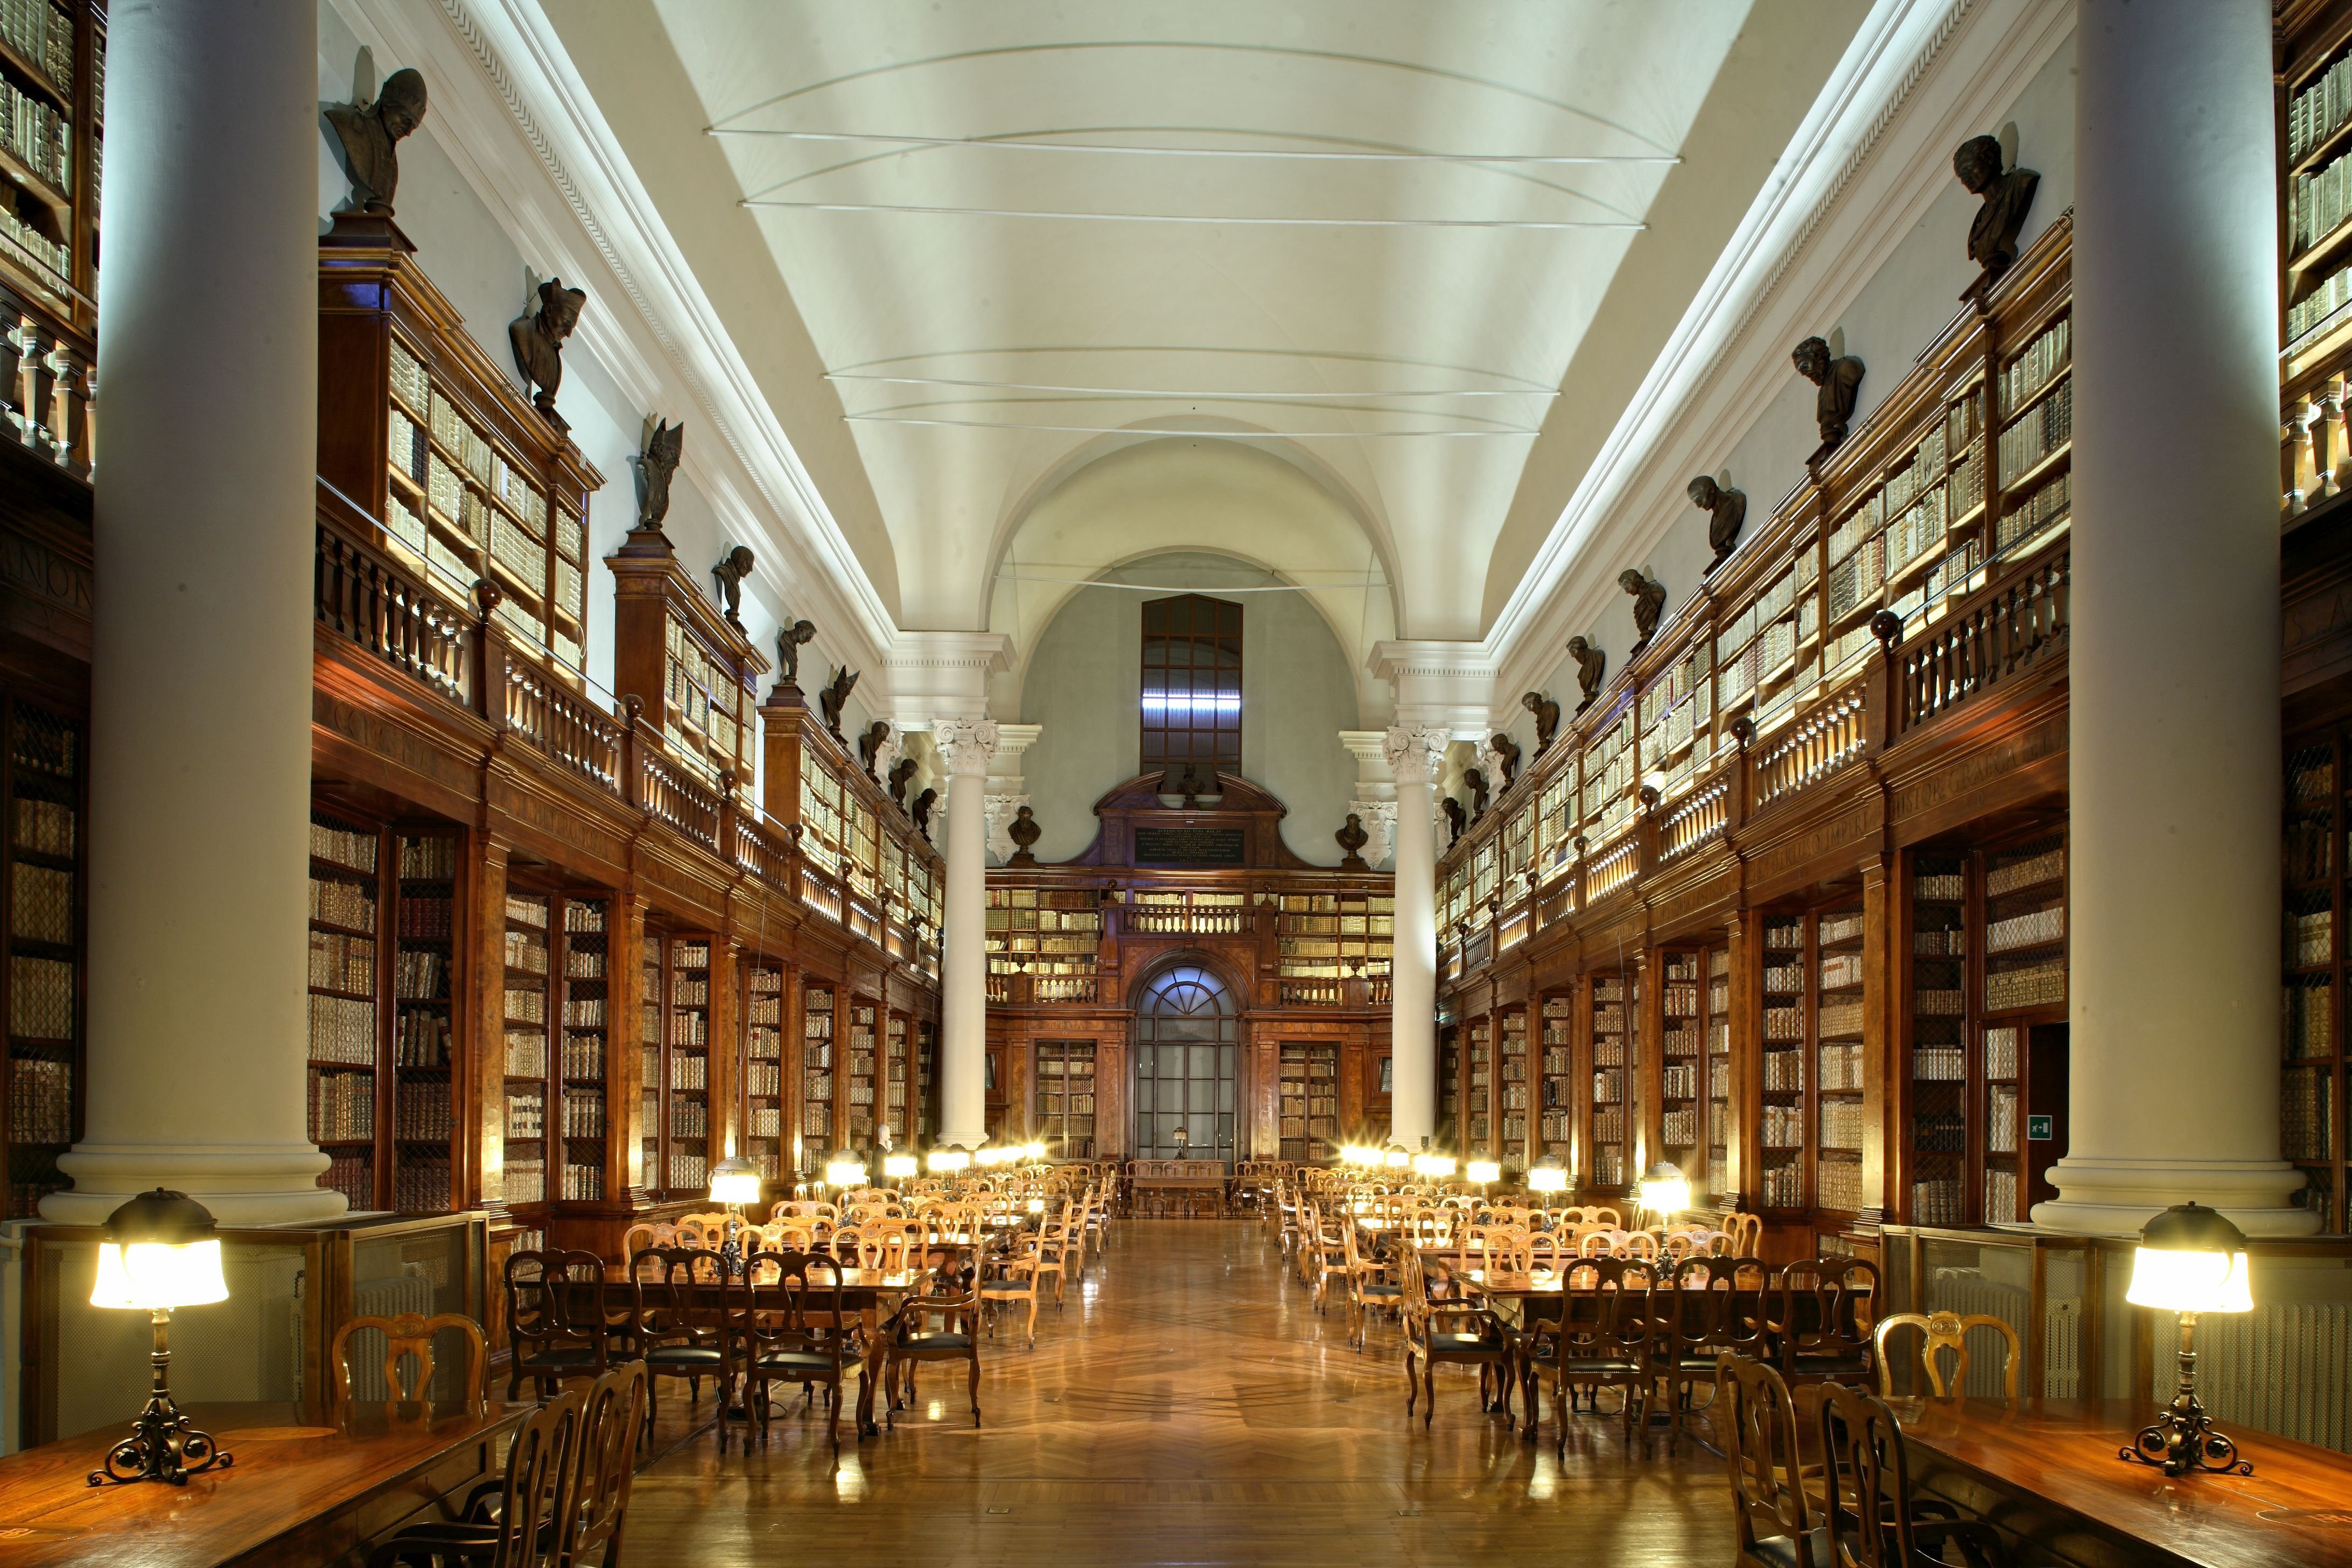 Библиотека рэу. Библиотека Болонского университета. Библиотека Болонского университета в Италии. Болонья Италия Болонский университет первый университет. Университетская библиотека в Болонье.